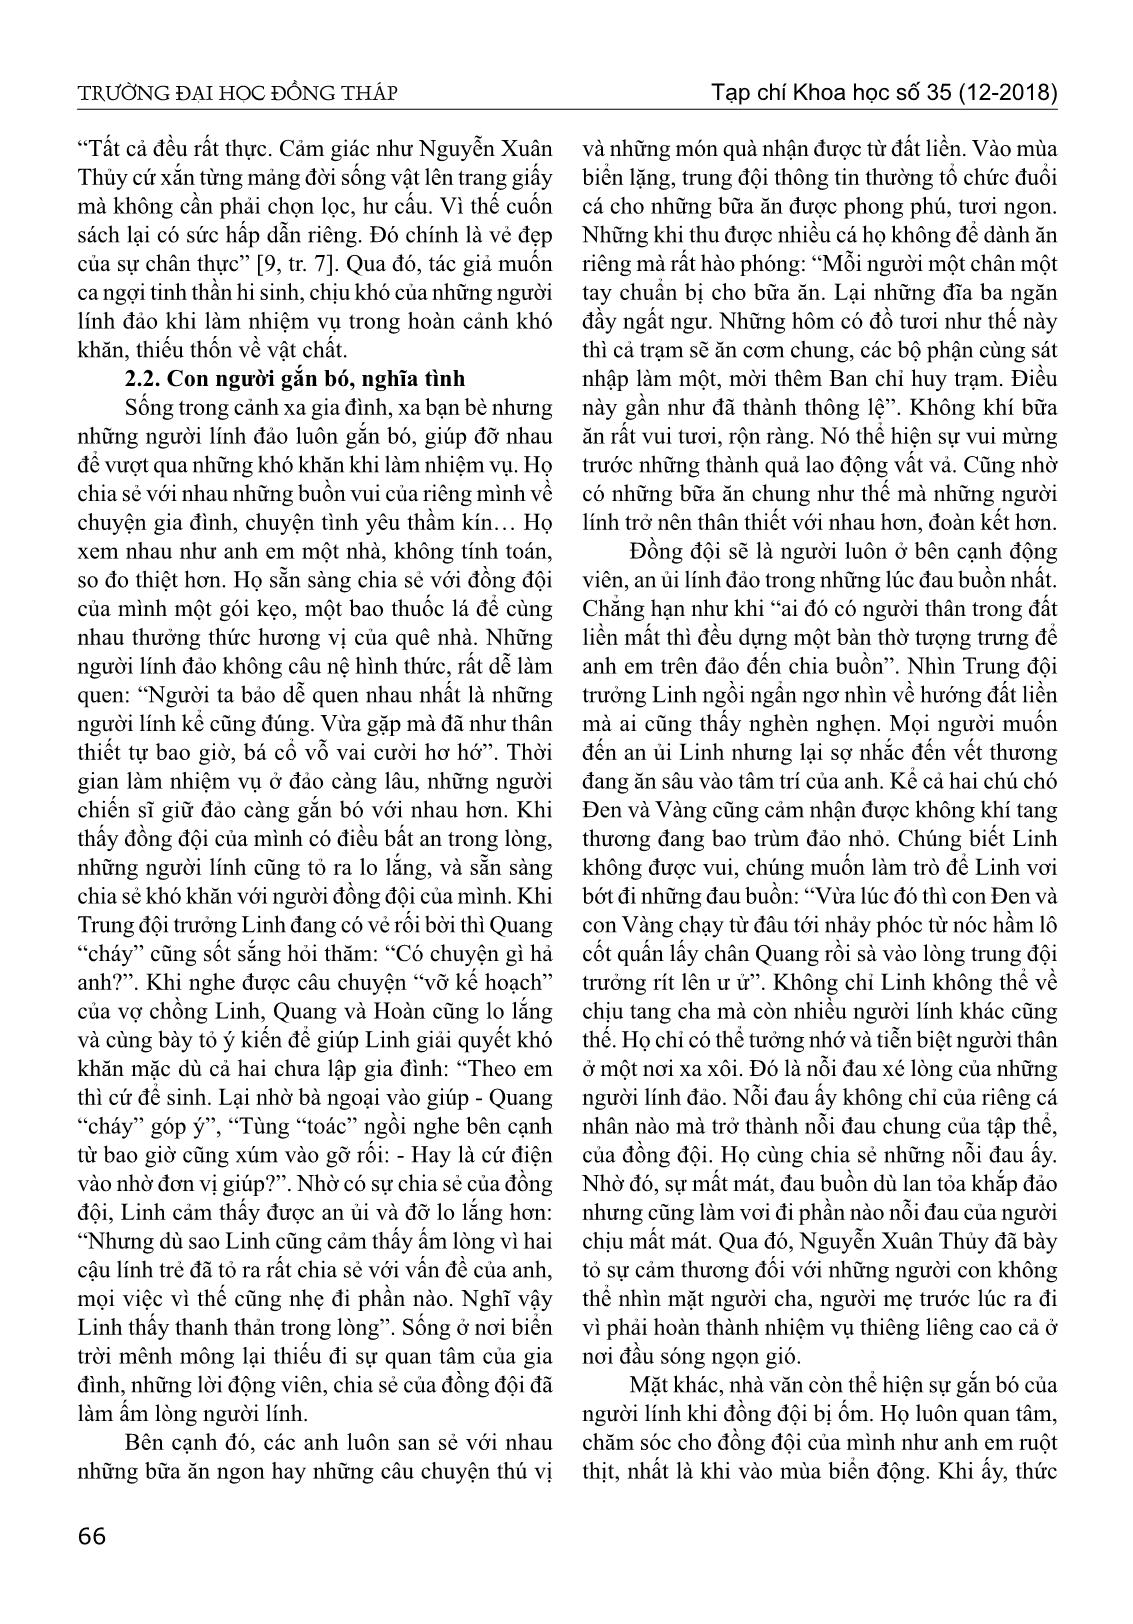 Chân dung người lính biển trong tiểu thuyết biển xanh màu lá của Nguyễn Xuân Thủy trang 3